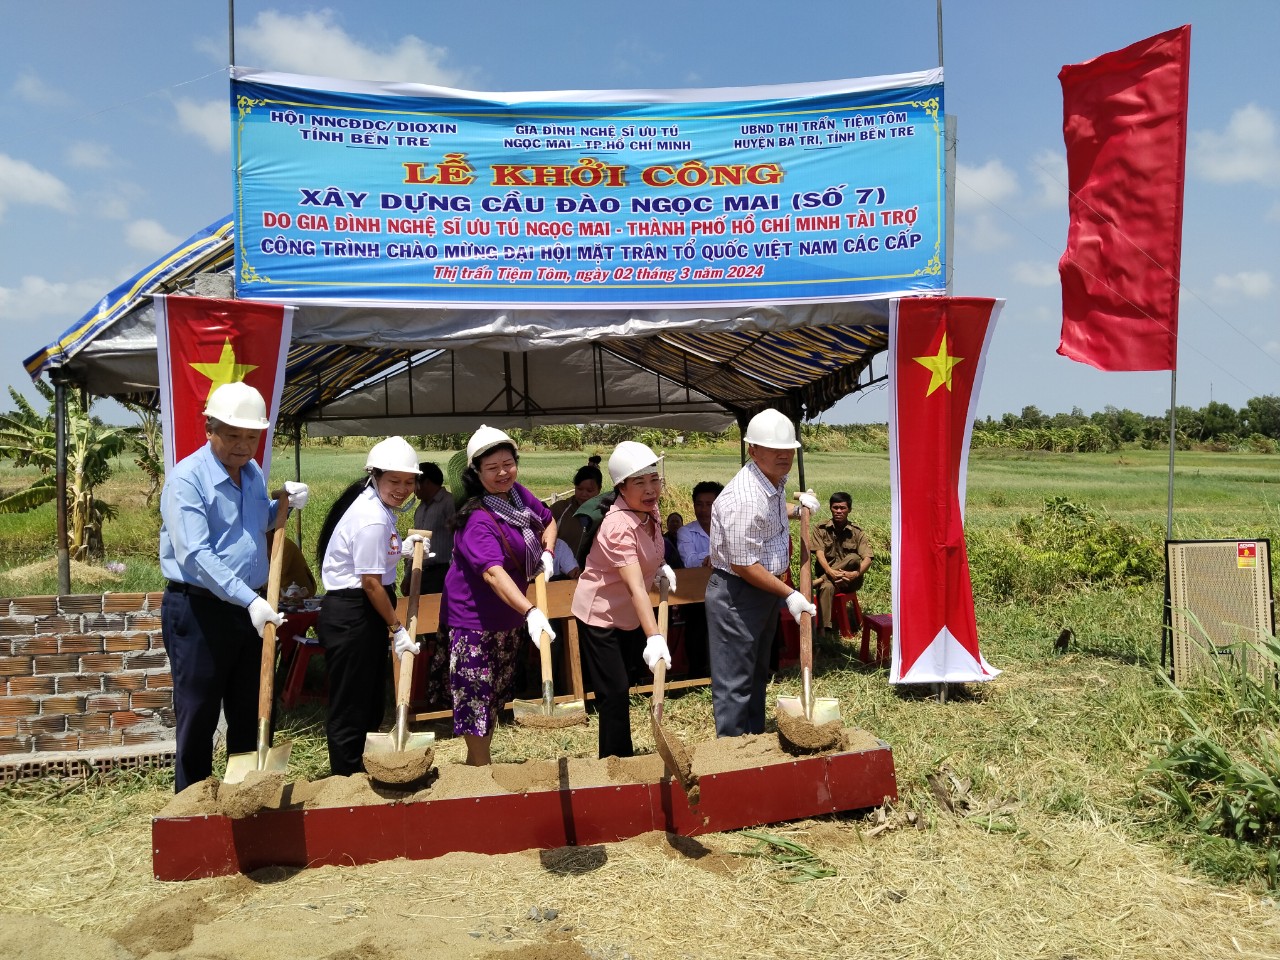 Hội NNCĐDC/dioxin-BVQTE tỉnh Bến Tre vận động xây dựng cầu nông thôn chào mừng Đại hội Mặt trận Tổ quốc các cấp